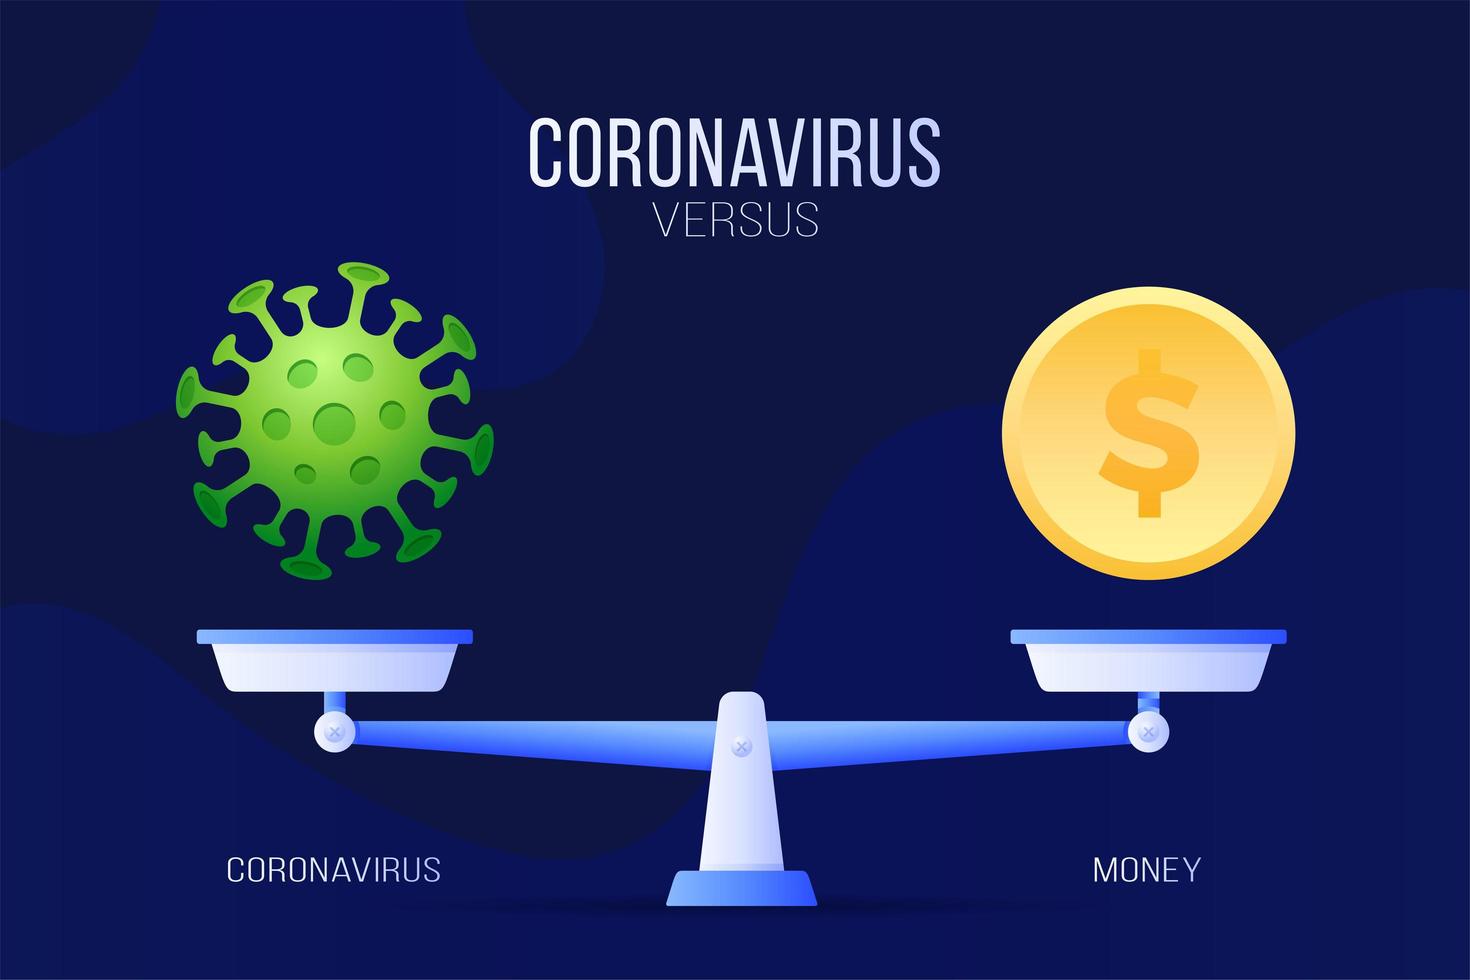 coronavirus o illustrazione vettoriale di denaro economico. concetto creativo di scale e versus, su un lato della scala si trova un virus covid-19 e sull'altro l'icona di una moneta. illustrazione vettoriale piatta.